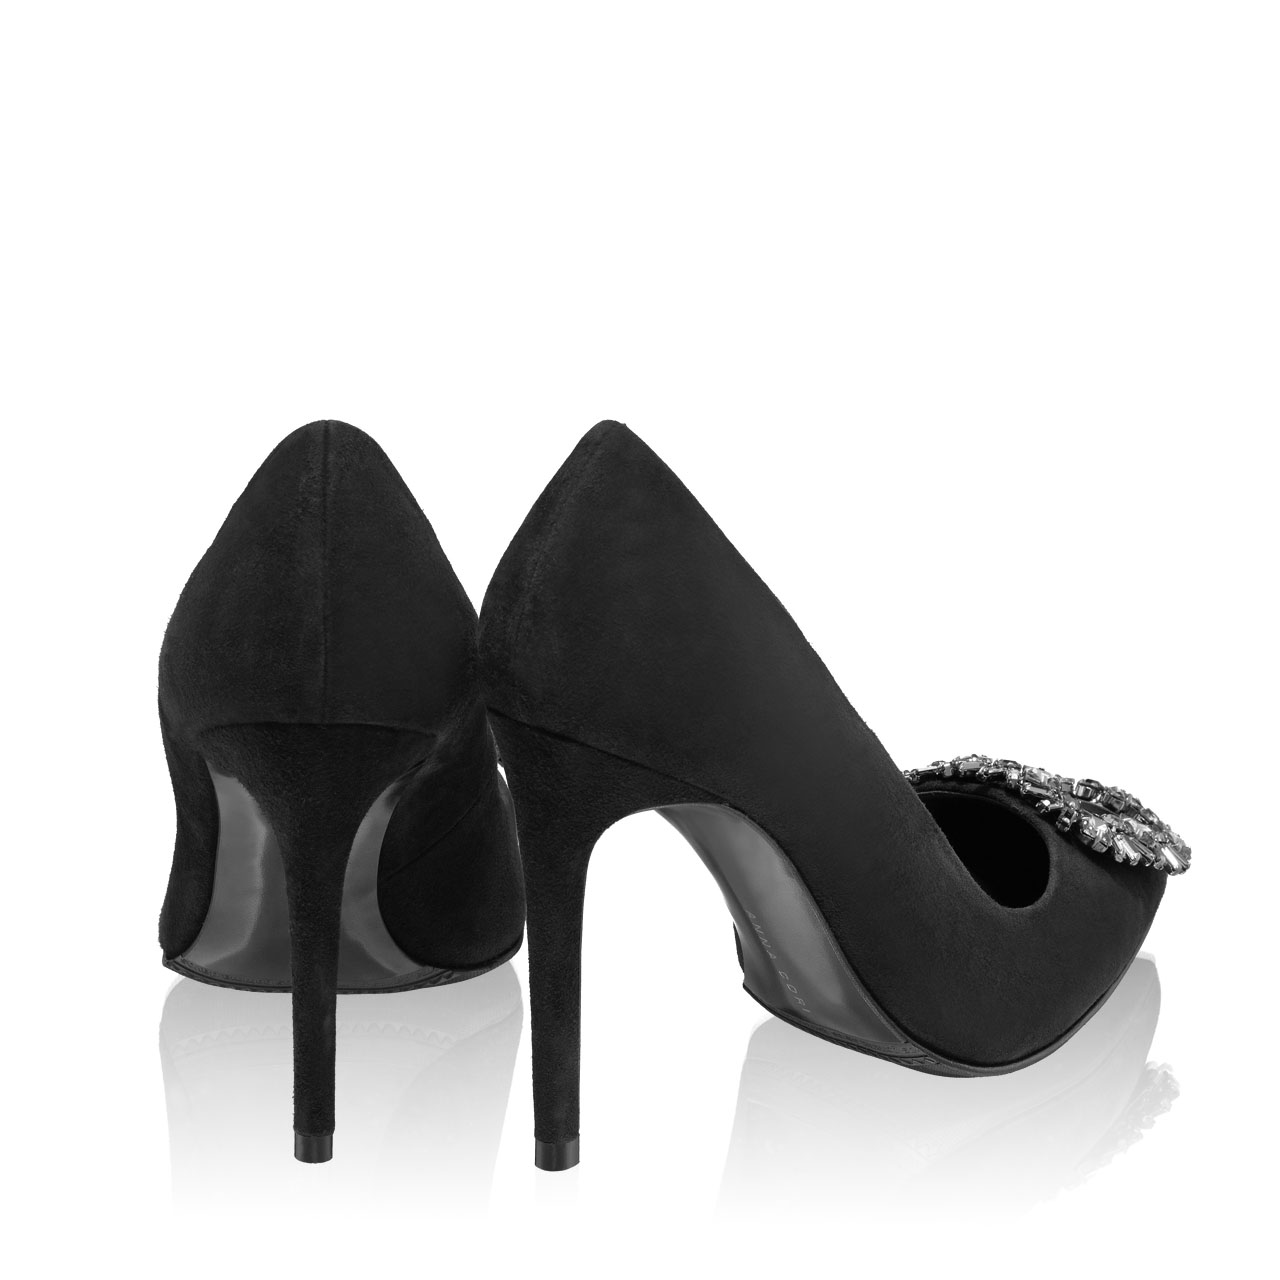 Imagine Pantofi Eleganti Dama 6097 Camoscio Negru